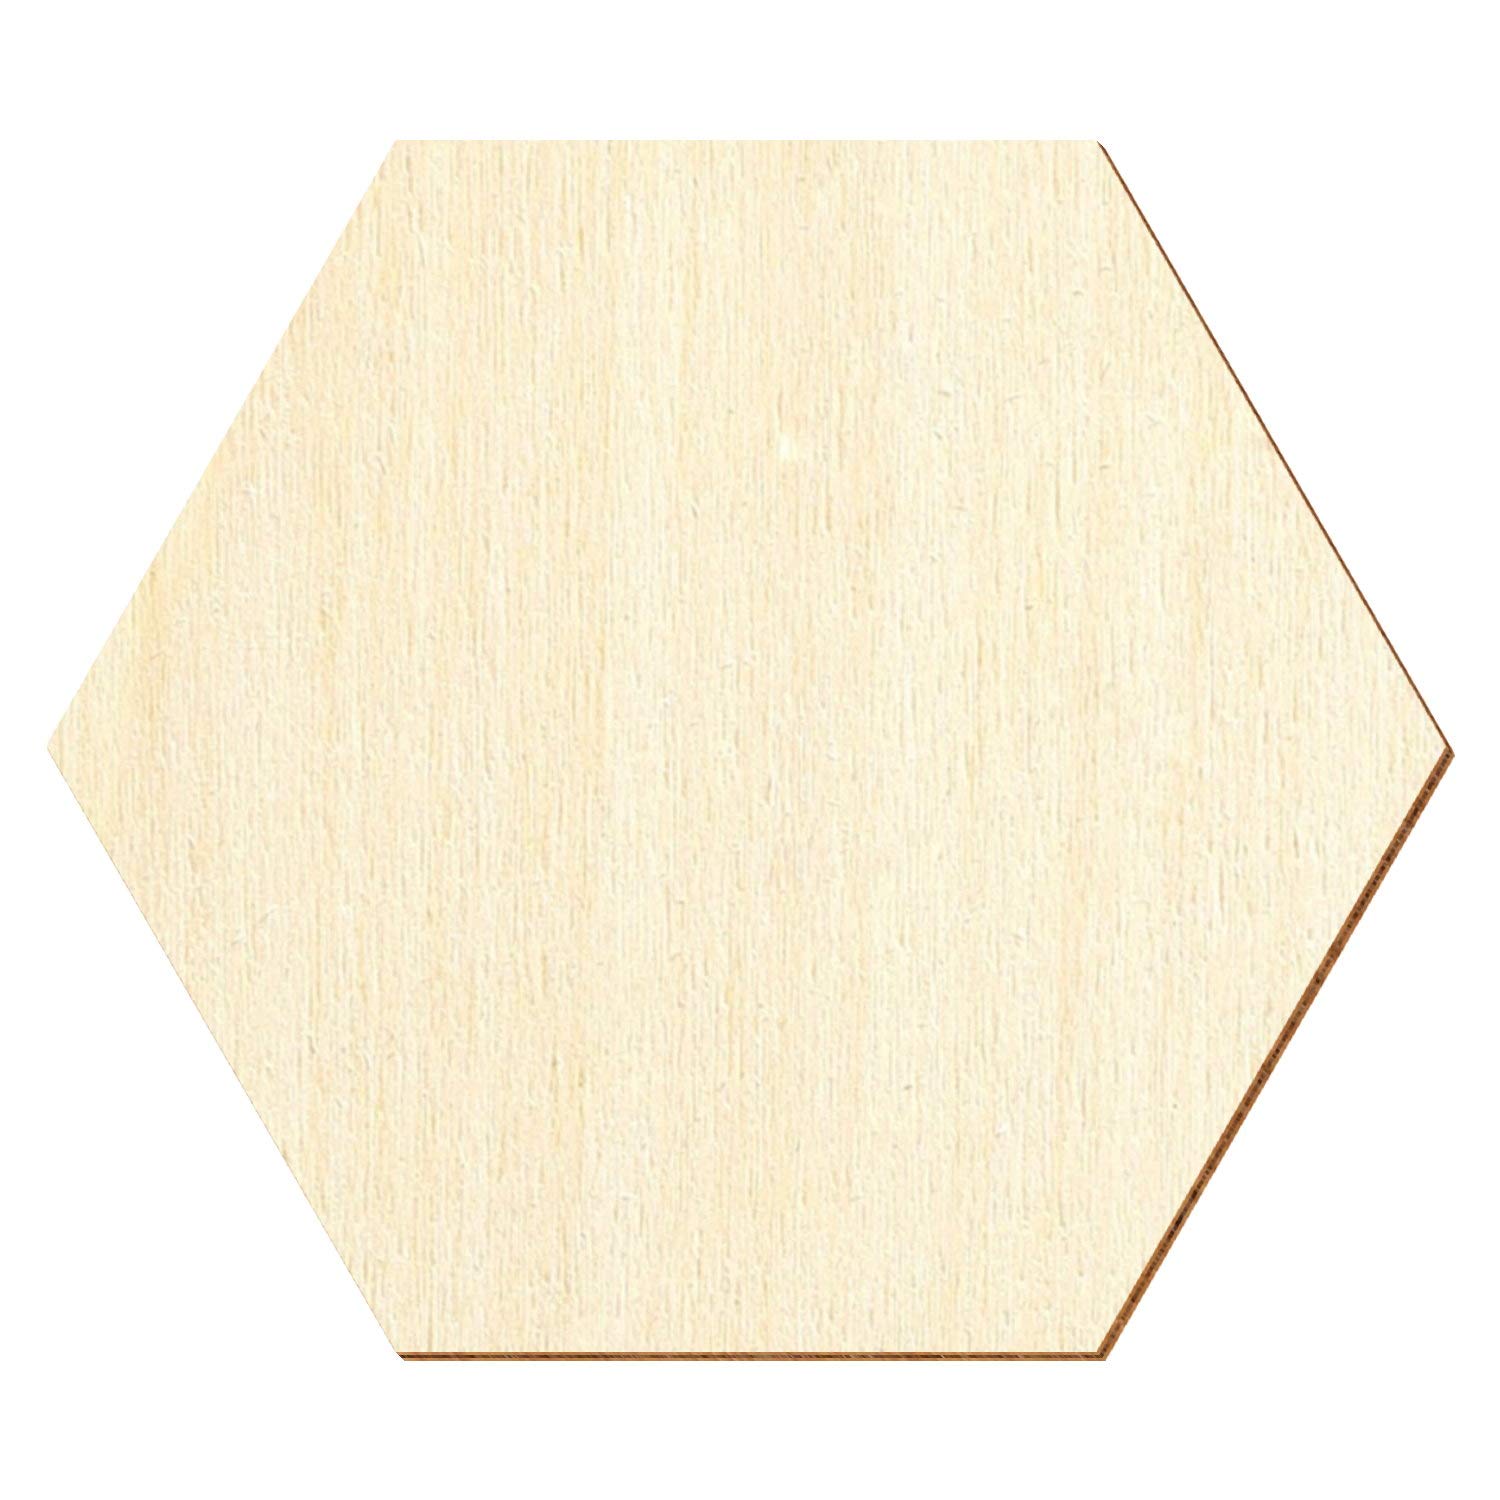 Holz Hexagon Sechseck - Deko Basteln 3-50cm, Größe:15cm, Pack mit:10 Stück